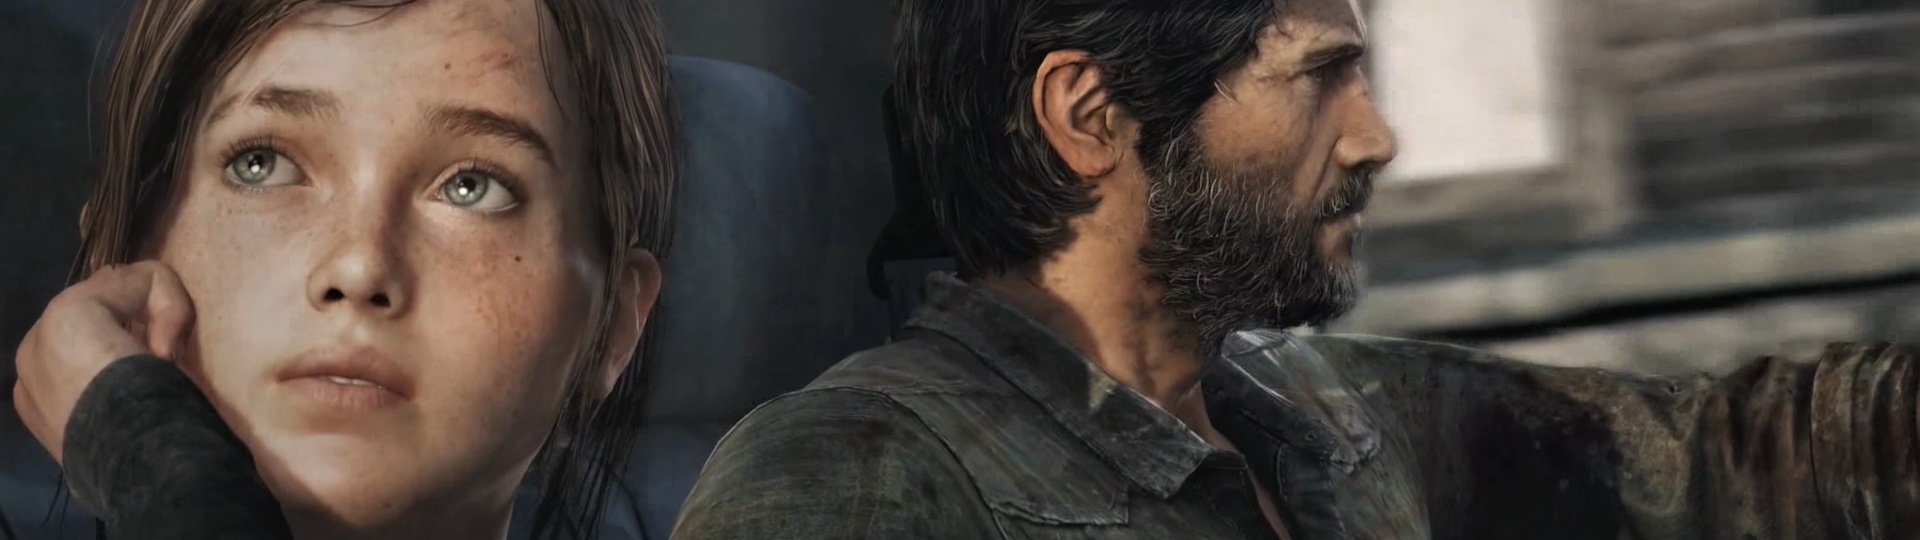 Sony začíná patchovat hry před vydáním PS5. Tentokráte to padlo na Last of Us Remastered | Novinky